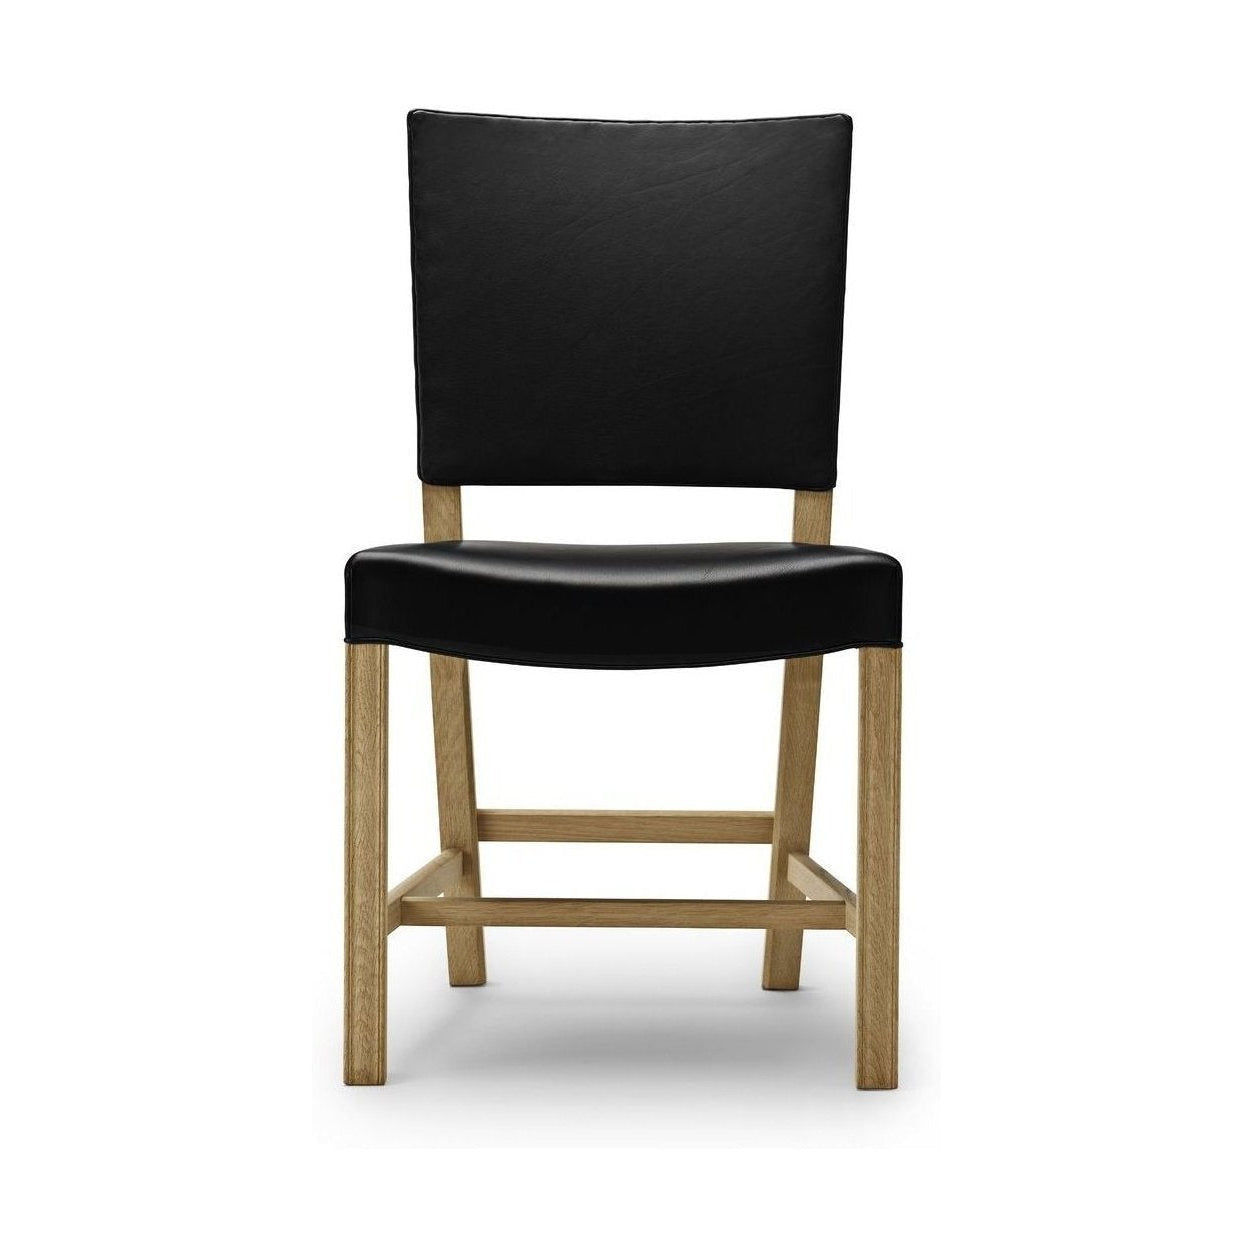 Carl Hansen KK37580 iso punainen tuoli, saippuaa tammi/musta nahka